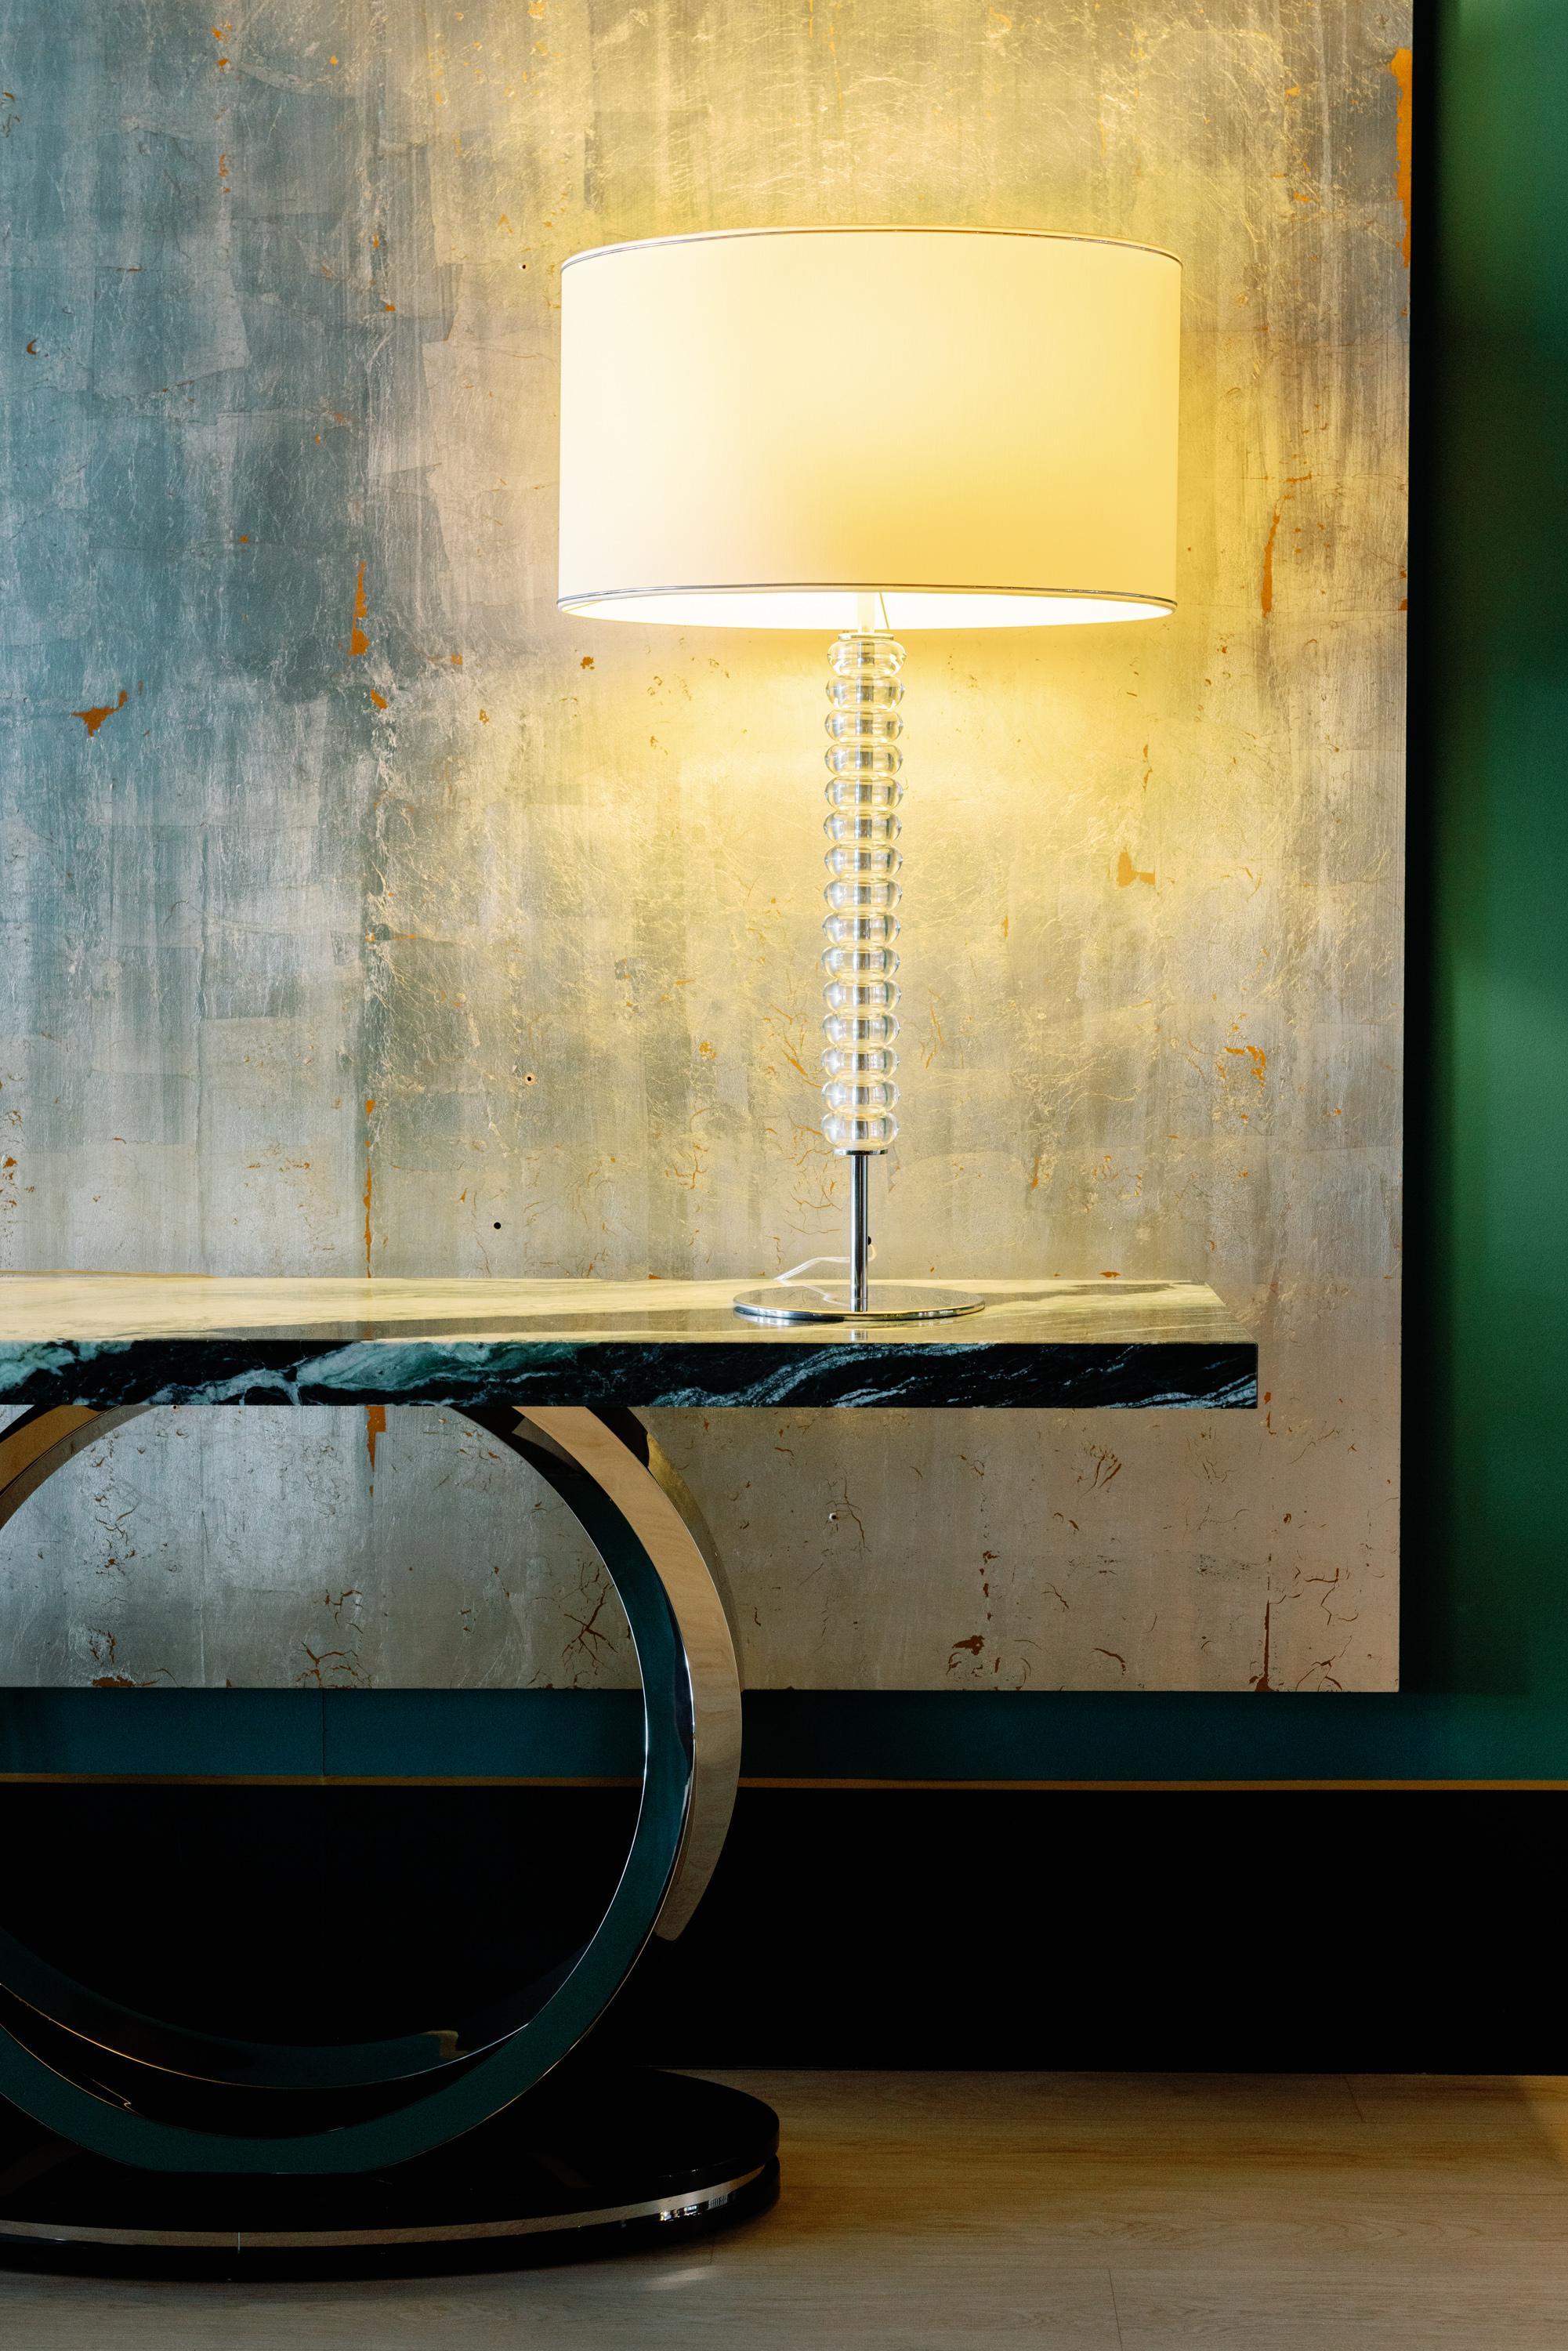 Table console Armilar, Collection S, fabriqué à la main au Portugal - Europe par GF Modern.

La table console Armilar présente un design moderne qui rend hommage à la sphère armillaire portugaise, un instrument qui permettait aux navigateurs